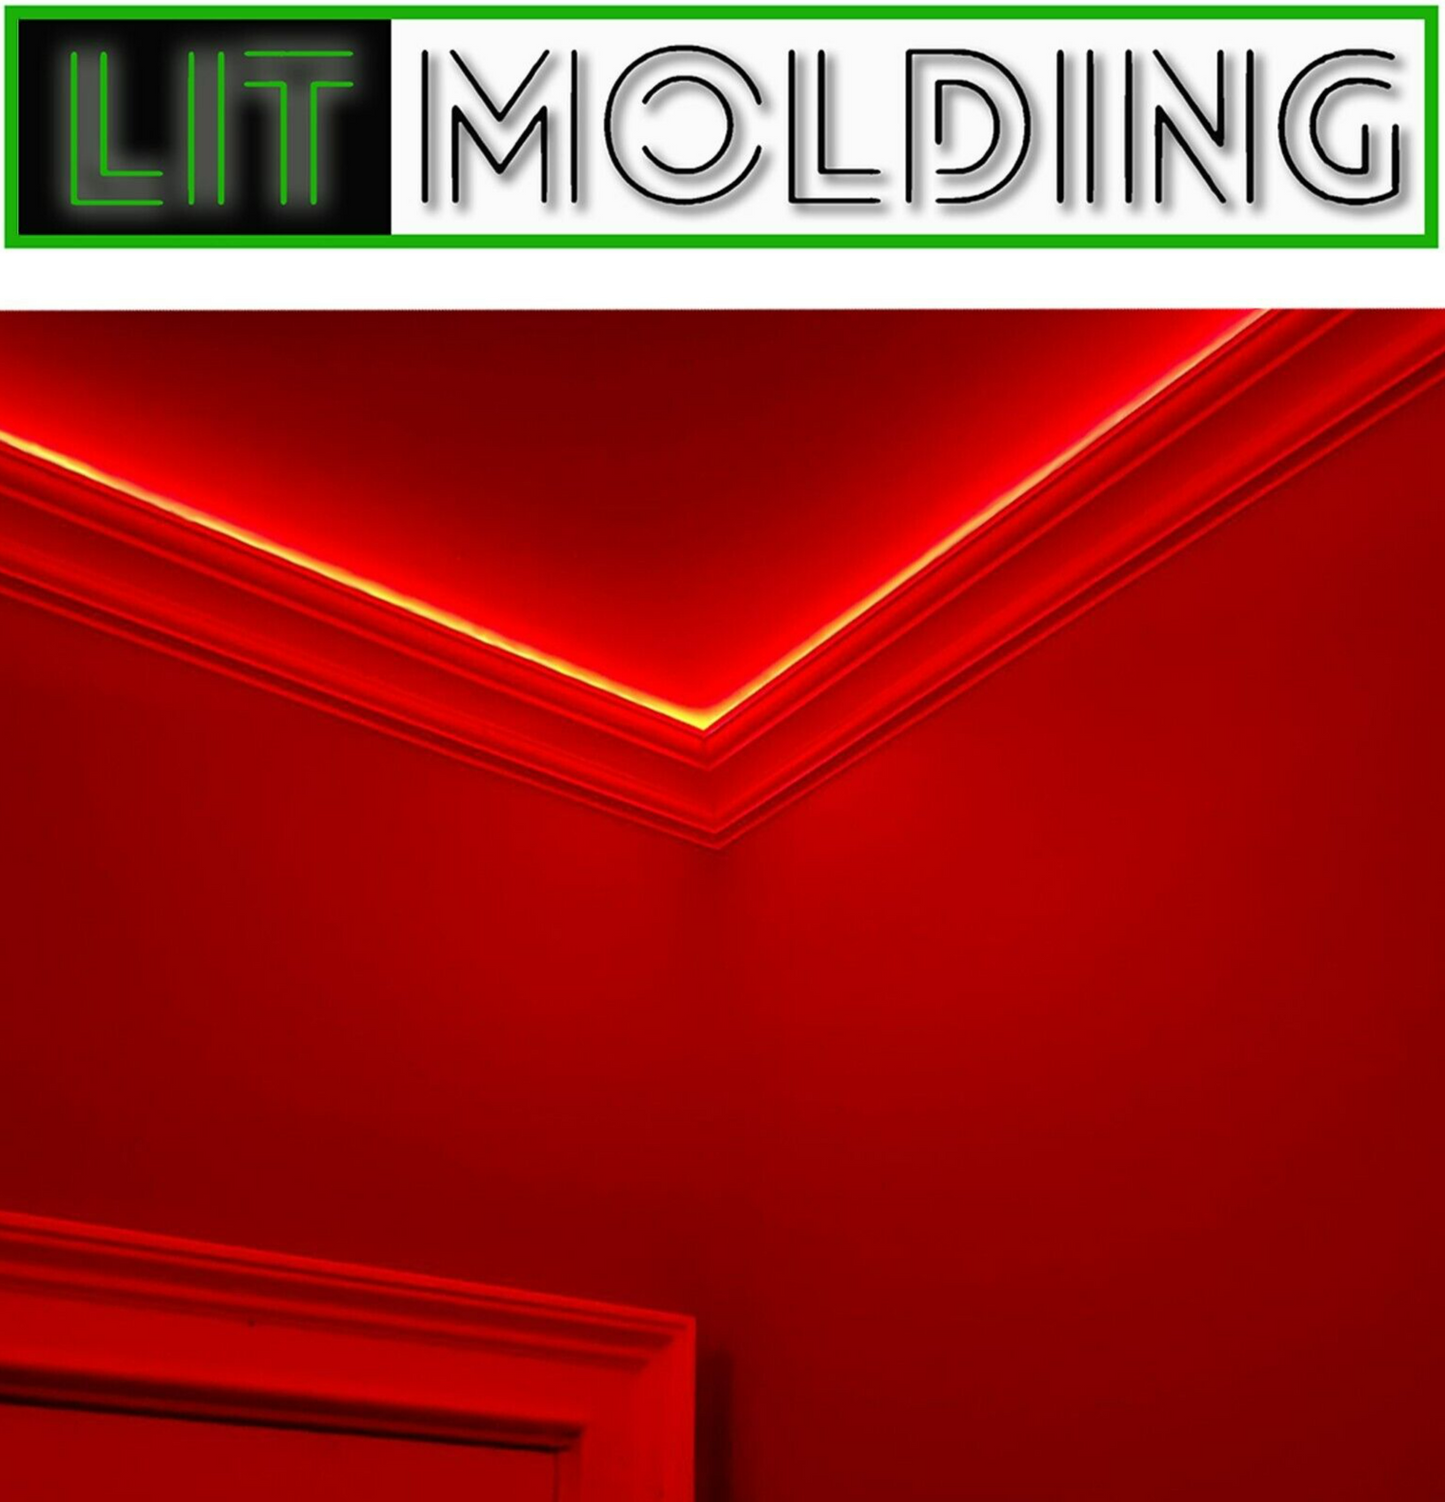 4.5" LIT molding LED backlit crown molding 34' kit.